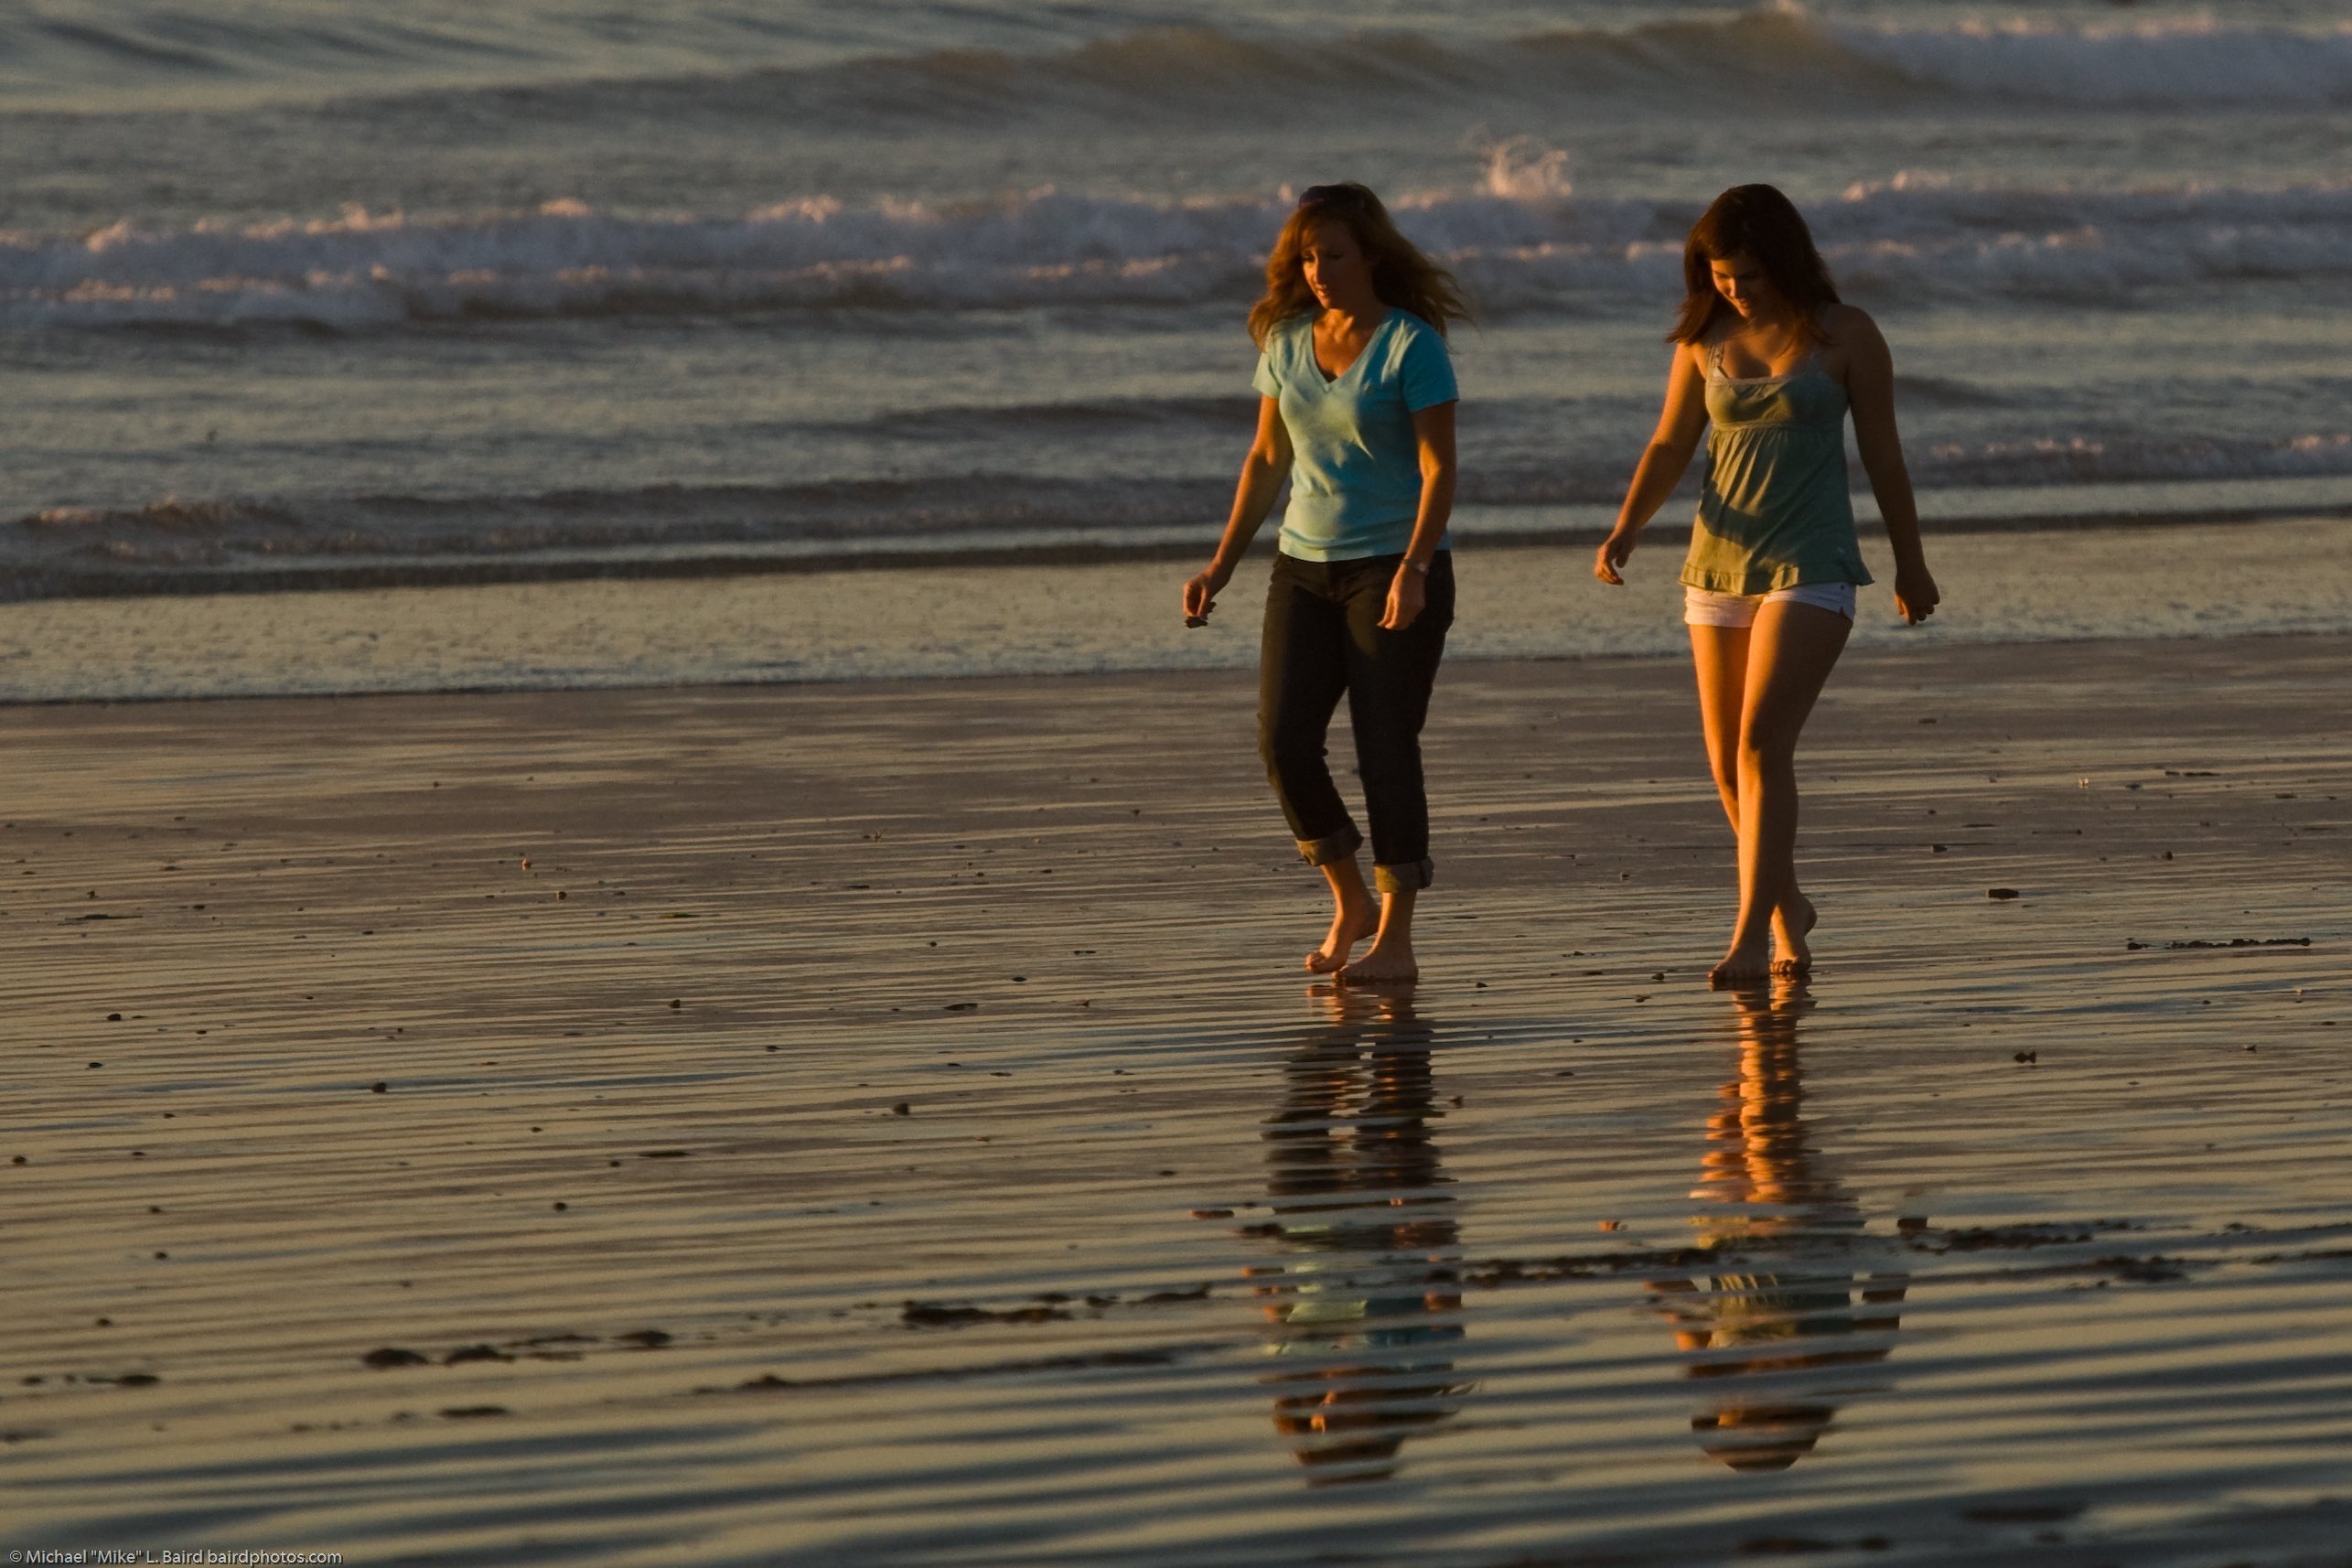 Madre e hija caminando por la playa. | Imagen: Wikimedia Commons